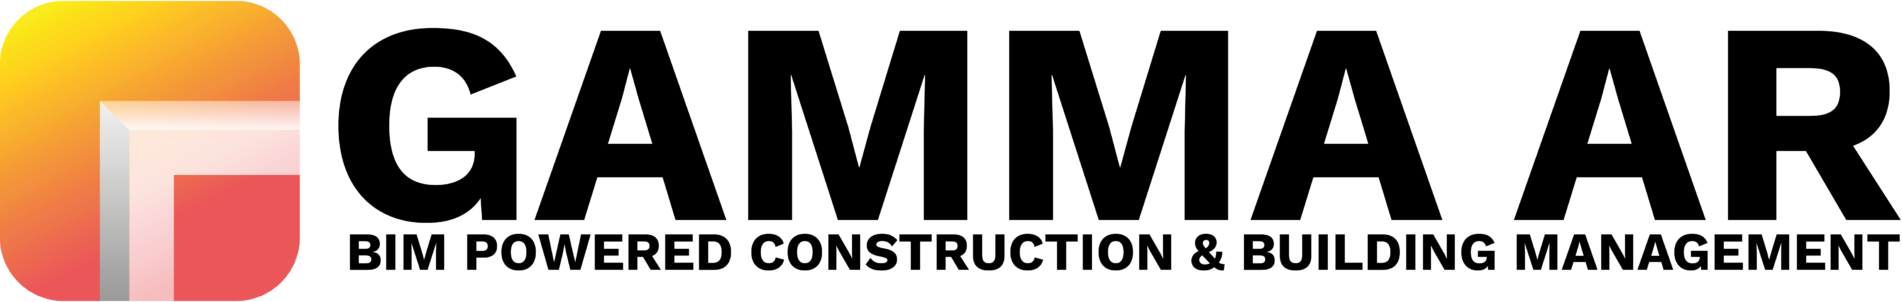 GAMMA AR logo